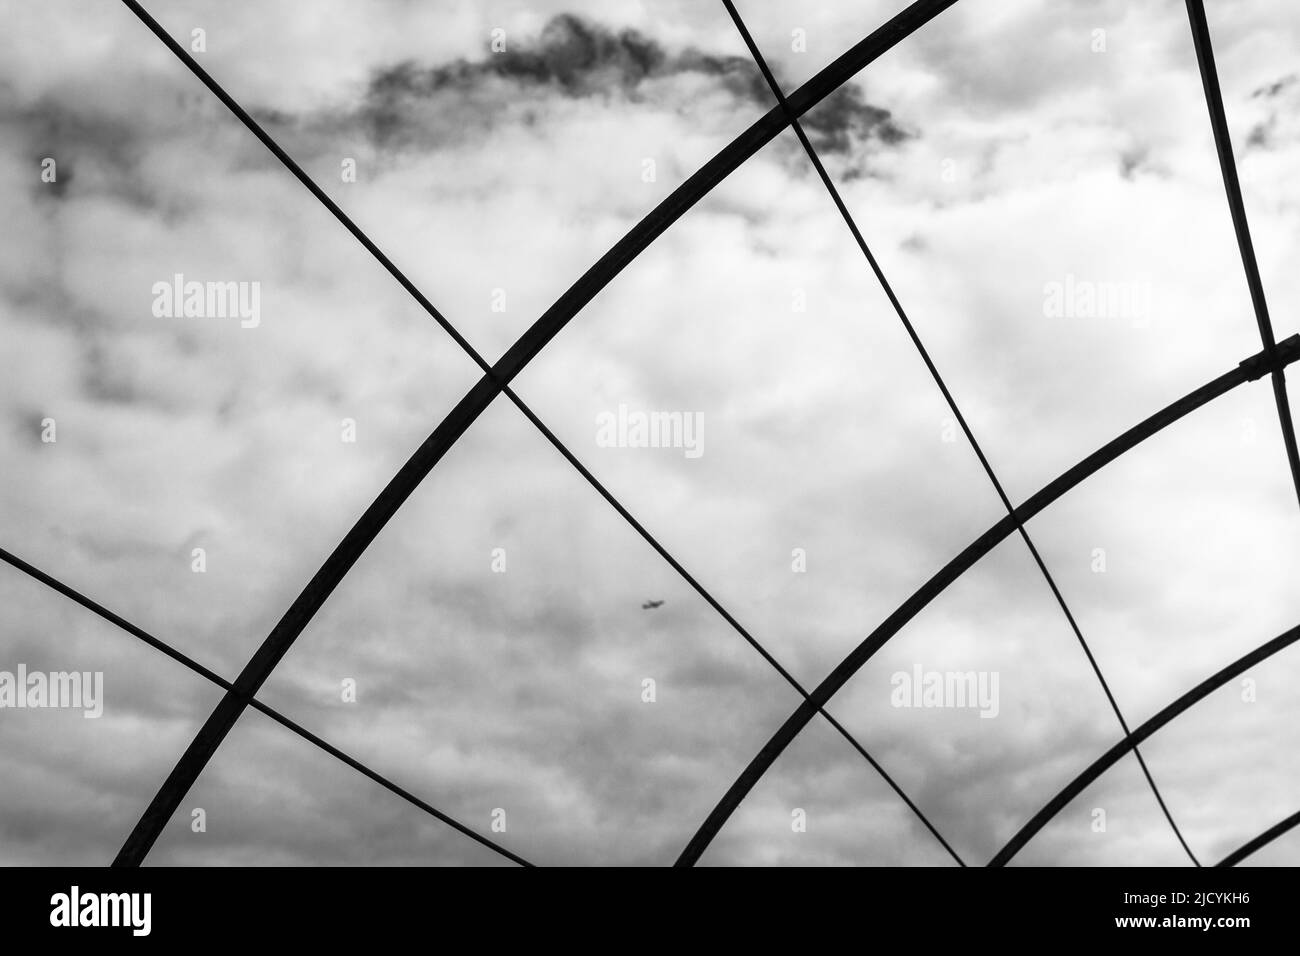 Une image en noir et blanc du cadre métallique d'une maison agricole de cerceau ou d'un polytunnel. Banque D'Images